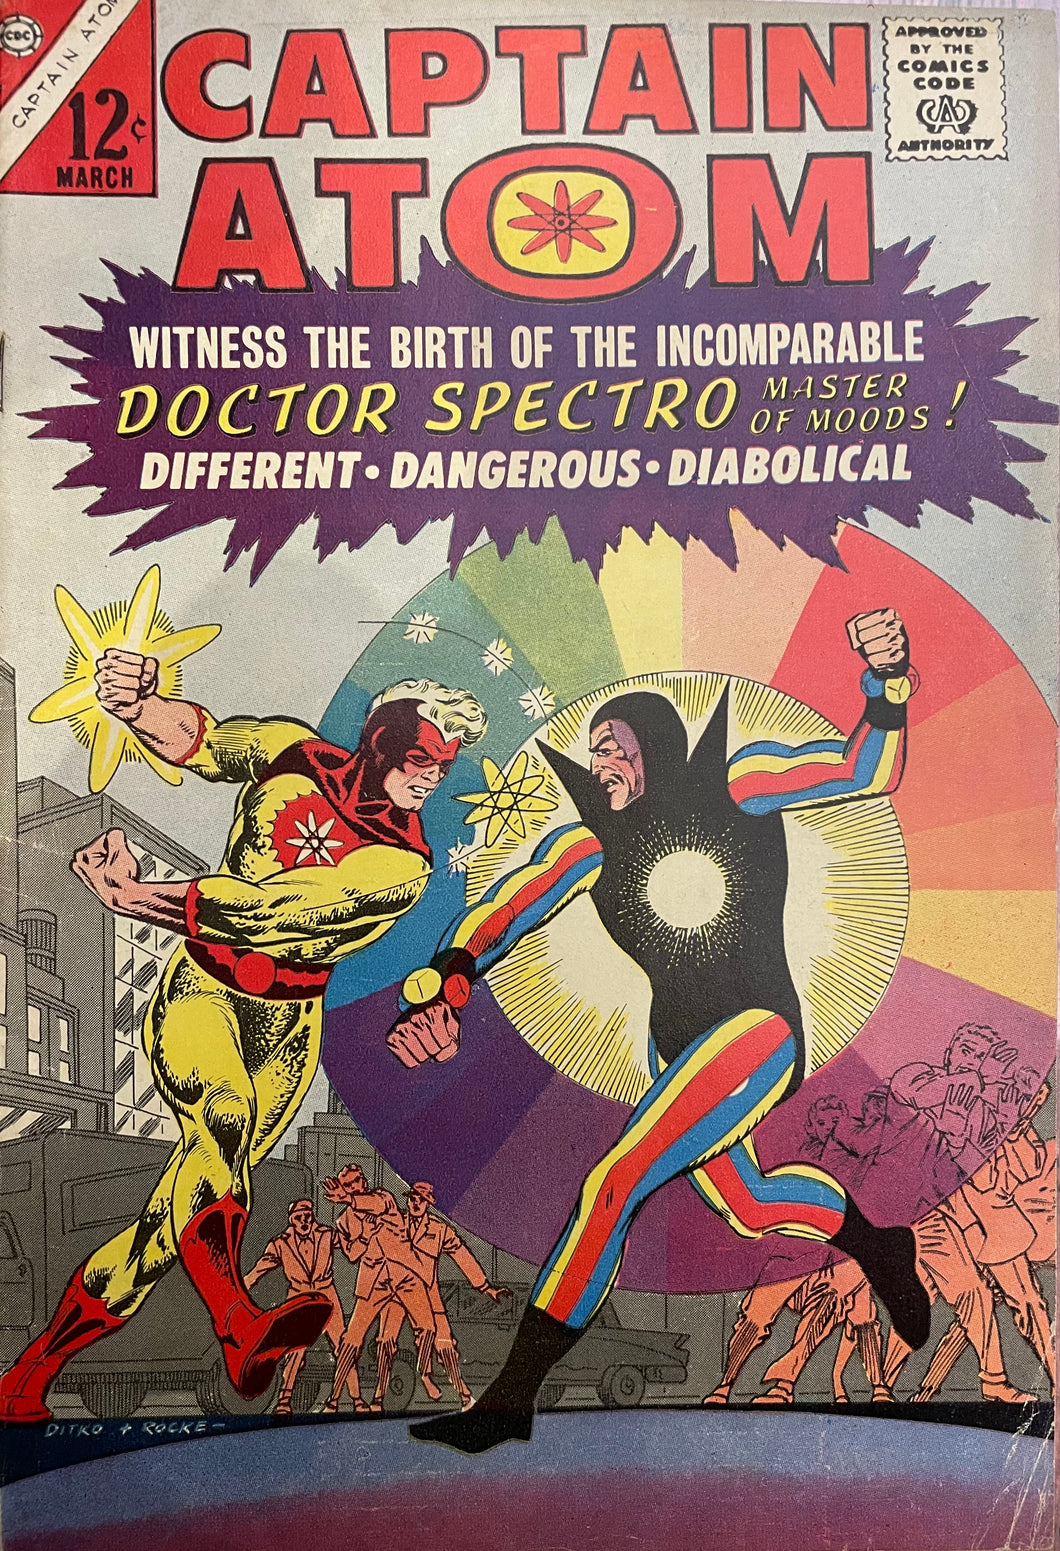 Captain Atom #79 (1966) Key Issue - Steve Ditko